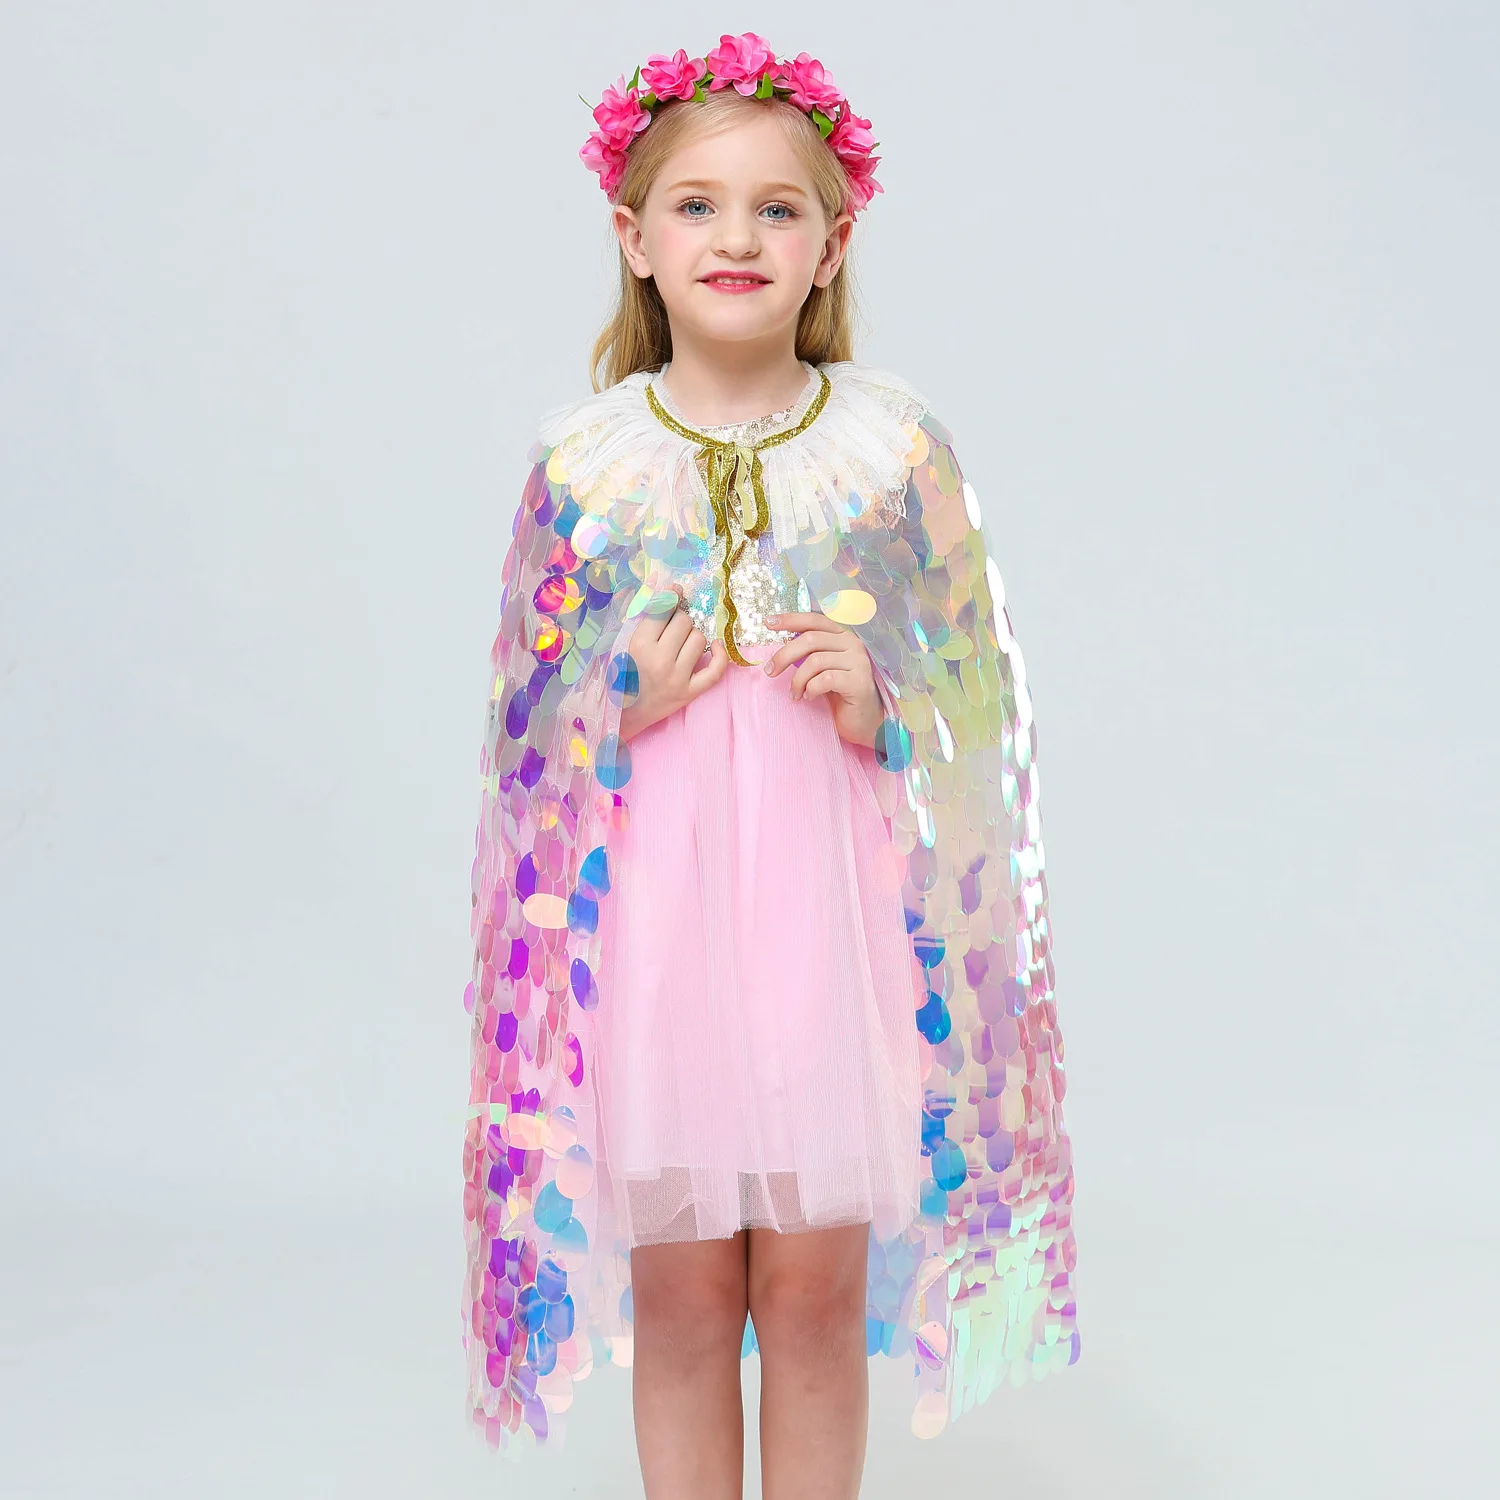 Детский Модный Плащ с блестками для девочек, шаль принцессы, пальто детская праздничная одежда на день рождения Красивая накидка, маленькое пальто для Хэллоуина, костюм